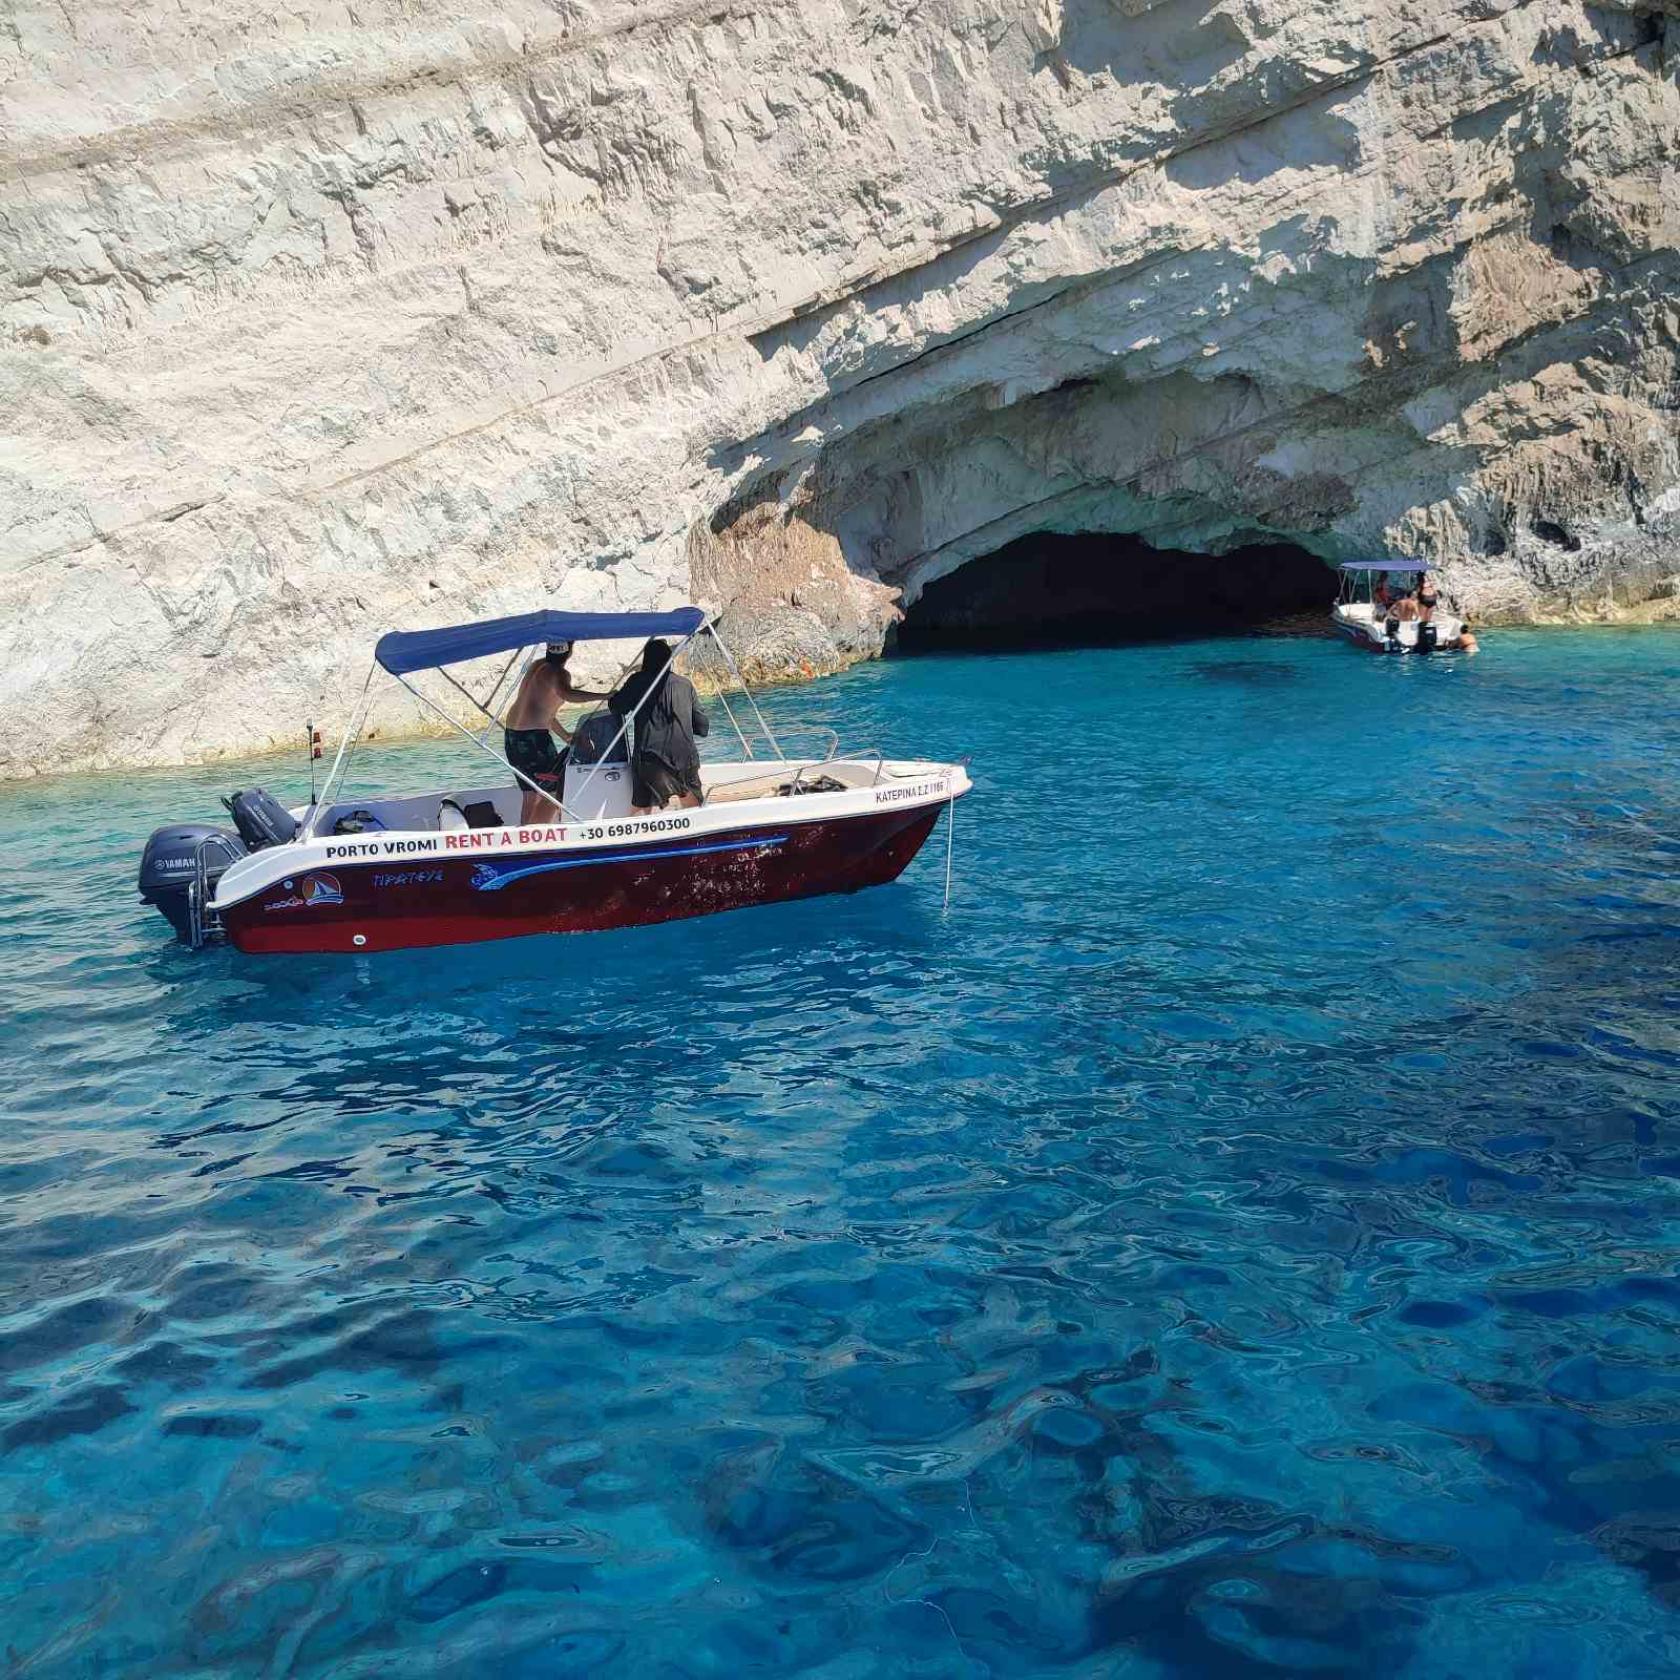 porto vromi boat rentals zakynthos cruises